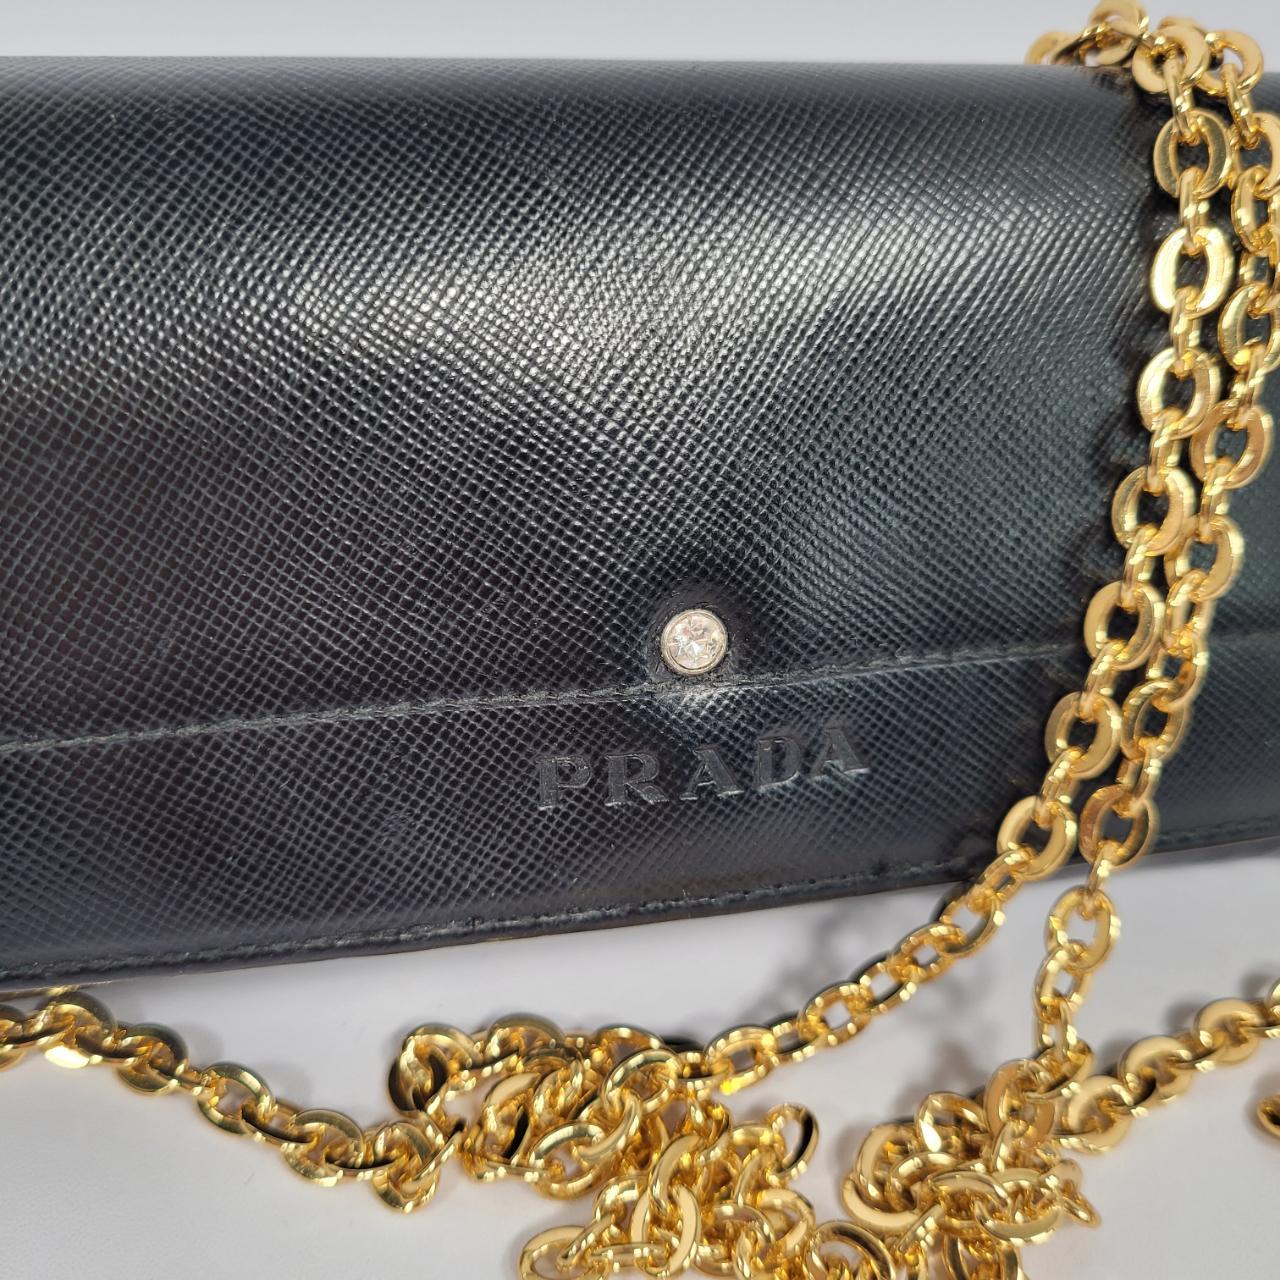 PRADA vintage wallet on chain. Vintage black Prada... - Depop